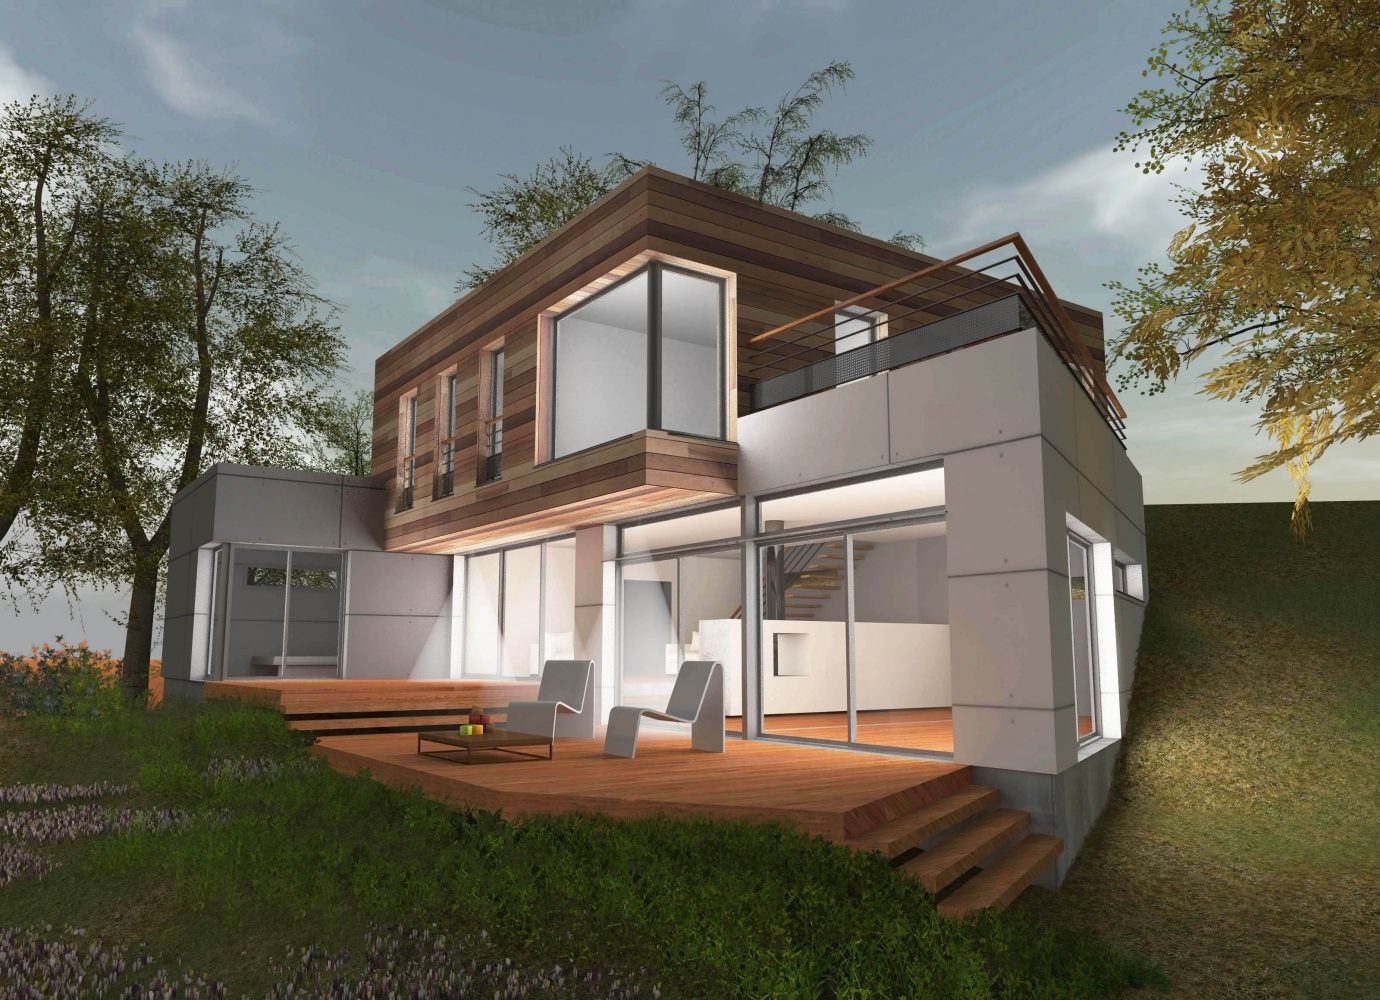 Philippe_Zerbib_Architecte_construction_maisons_ossature_bois_projet_maison_MACIA-CHIU-View 0_7